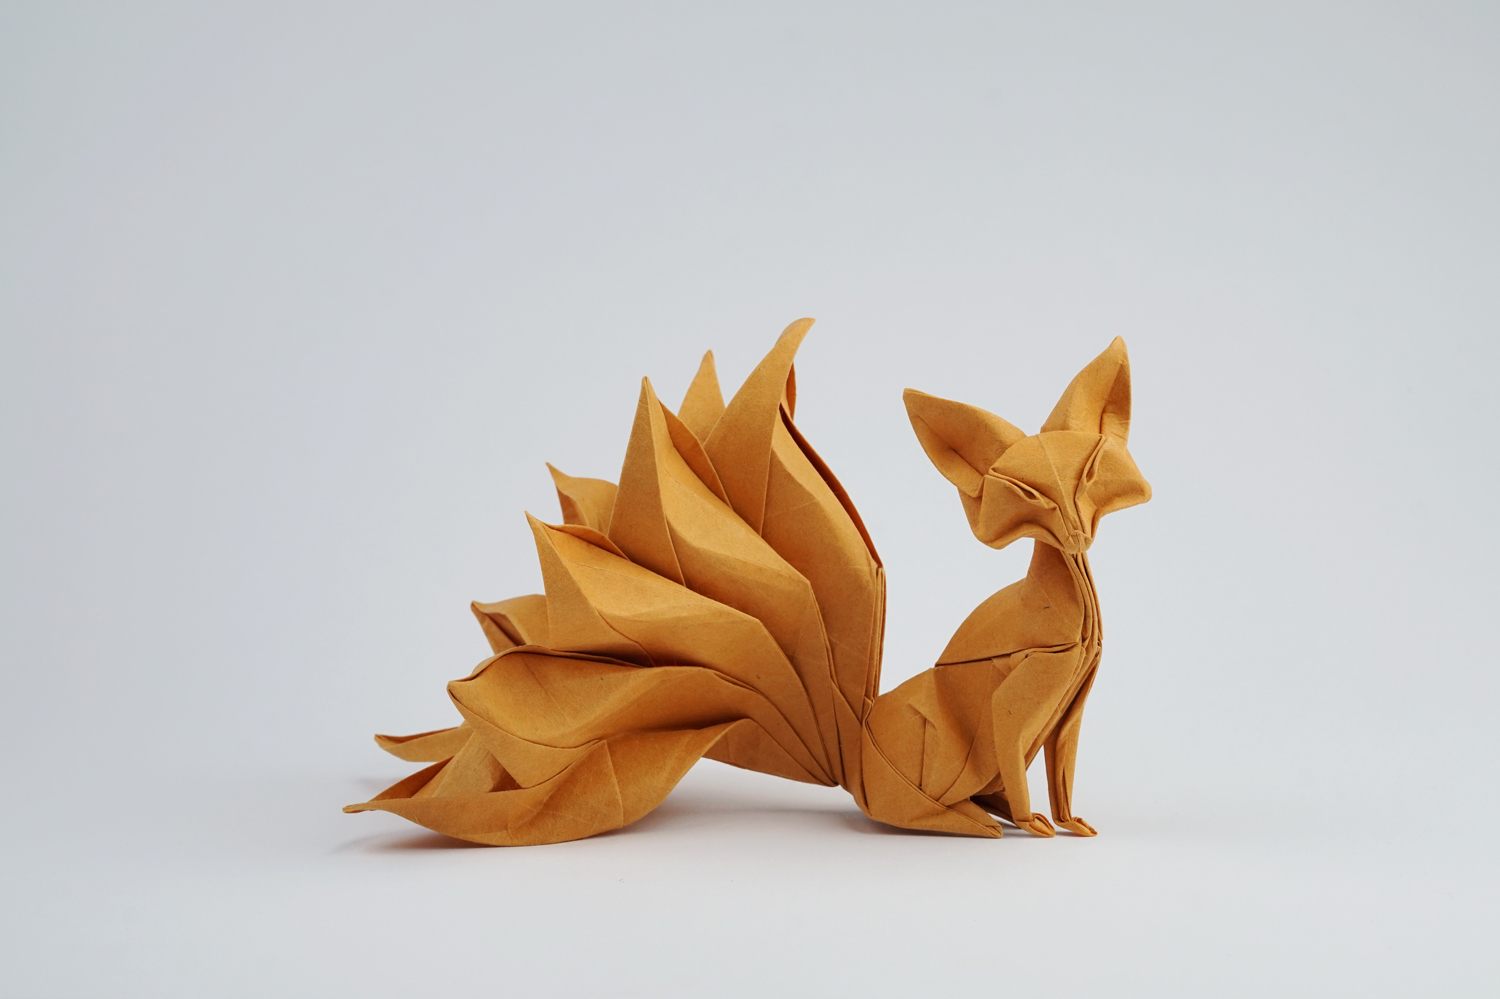 Nghệ sĩ gấp giấy Origami Nguyễn Hùng Cường | ELLE Decoration VN